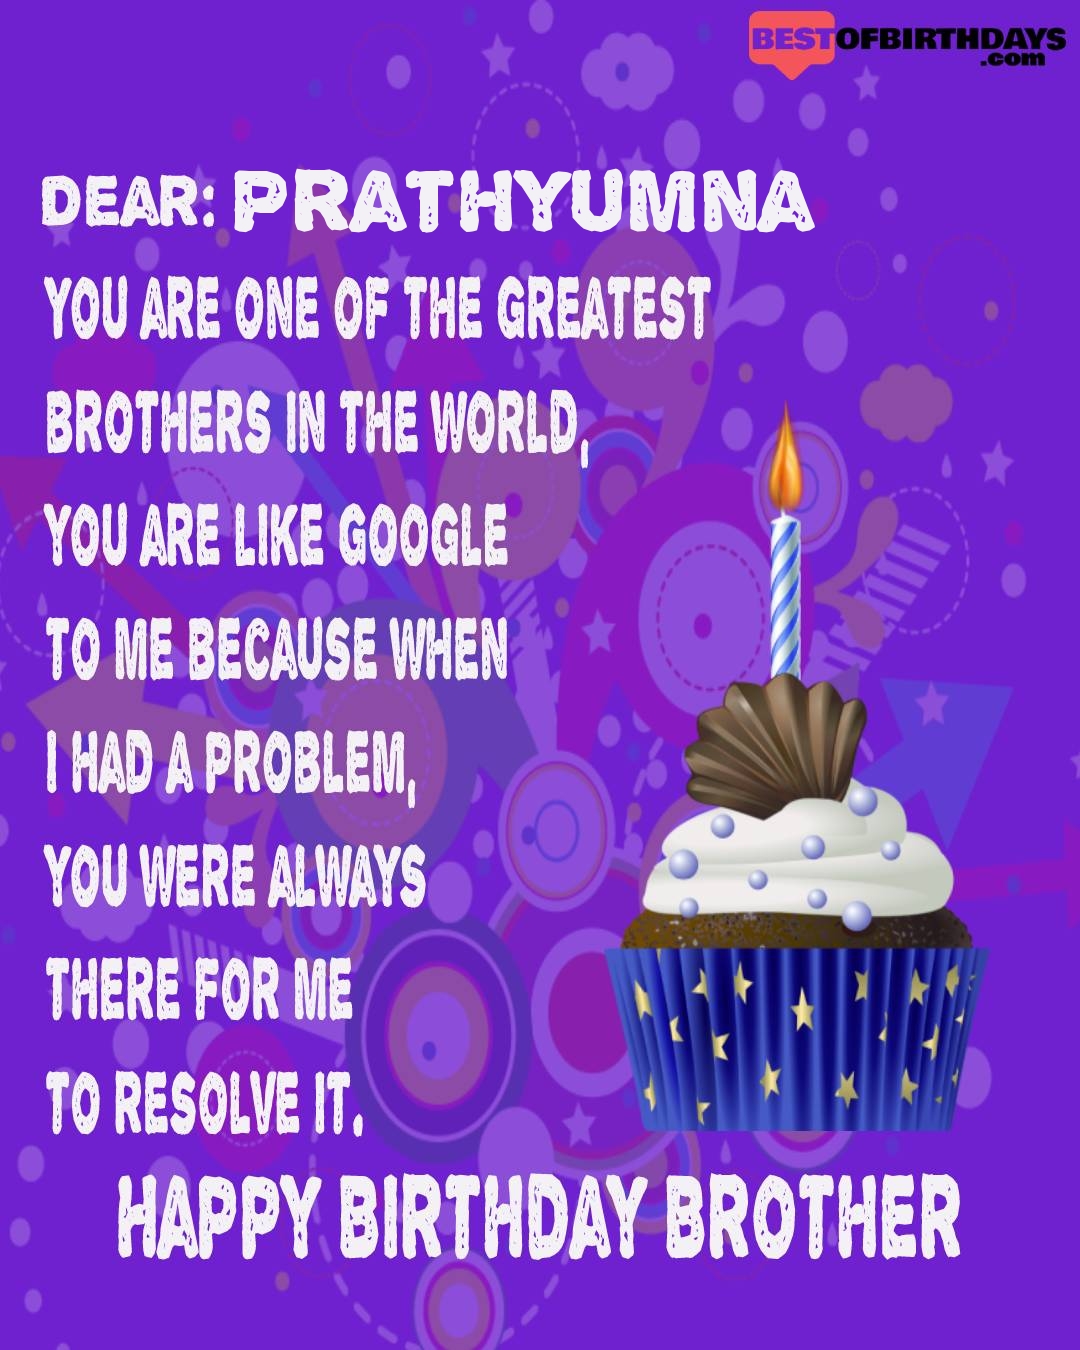 Happy birthday prathyumna bhai brother bro